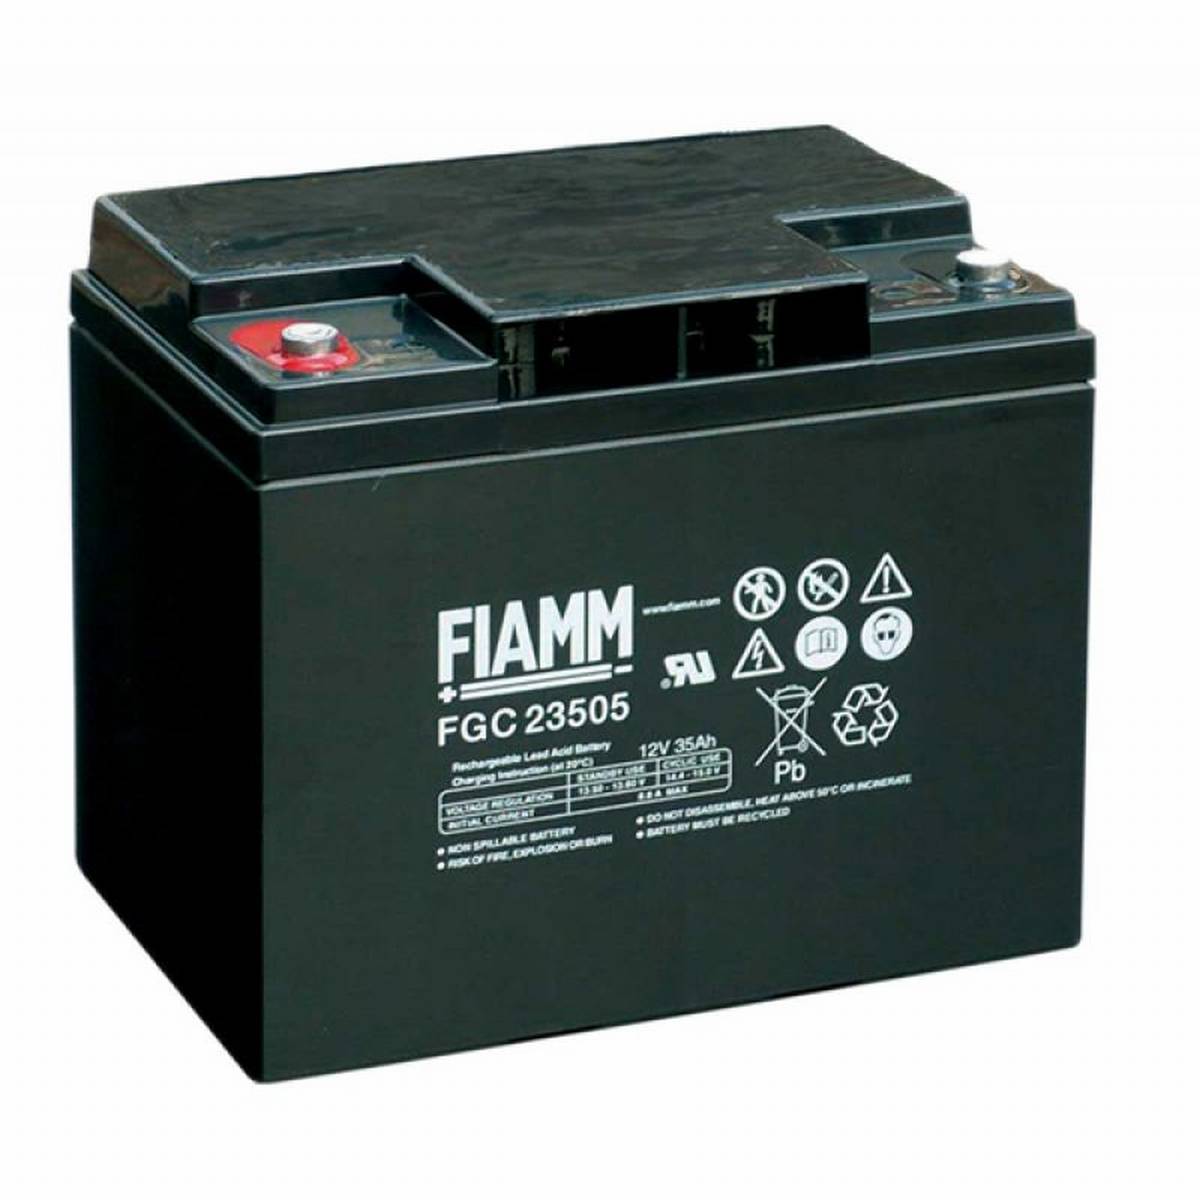 Fiamm FGC23505 Batteria al piombo 12V 35Ah / Batteria al piombo AGM FGC 23507